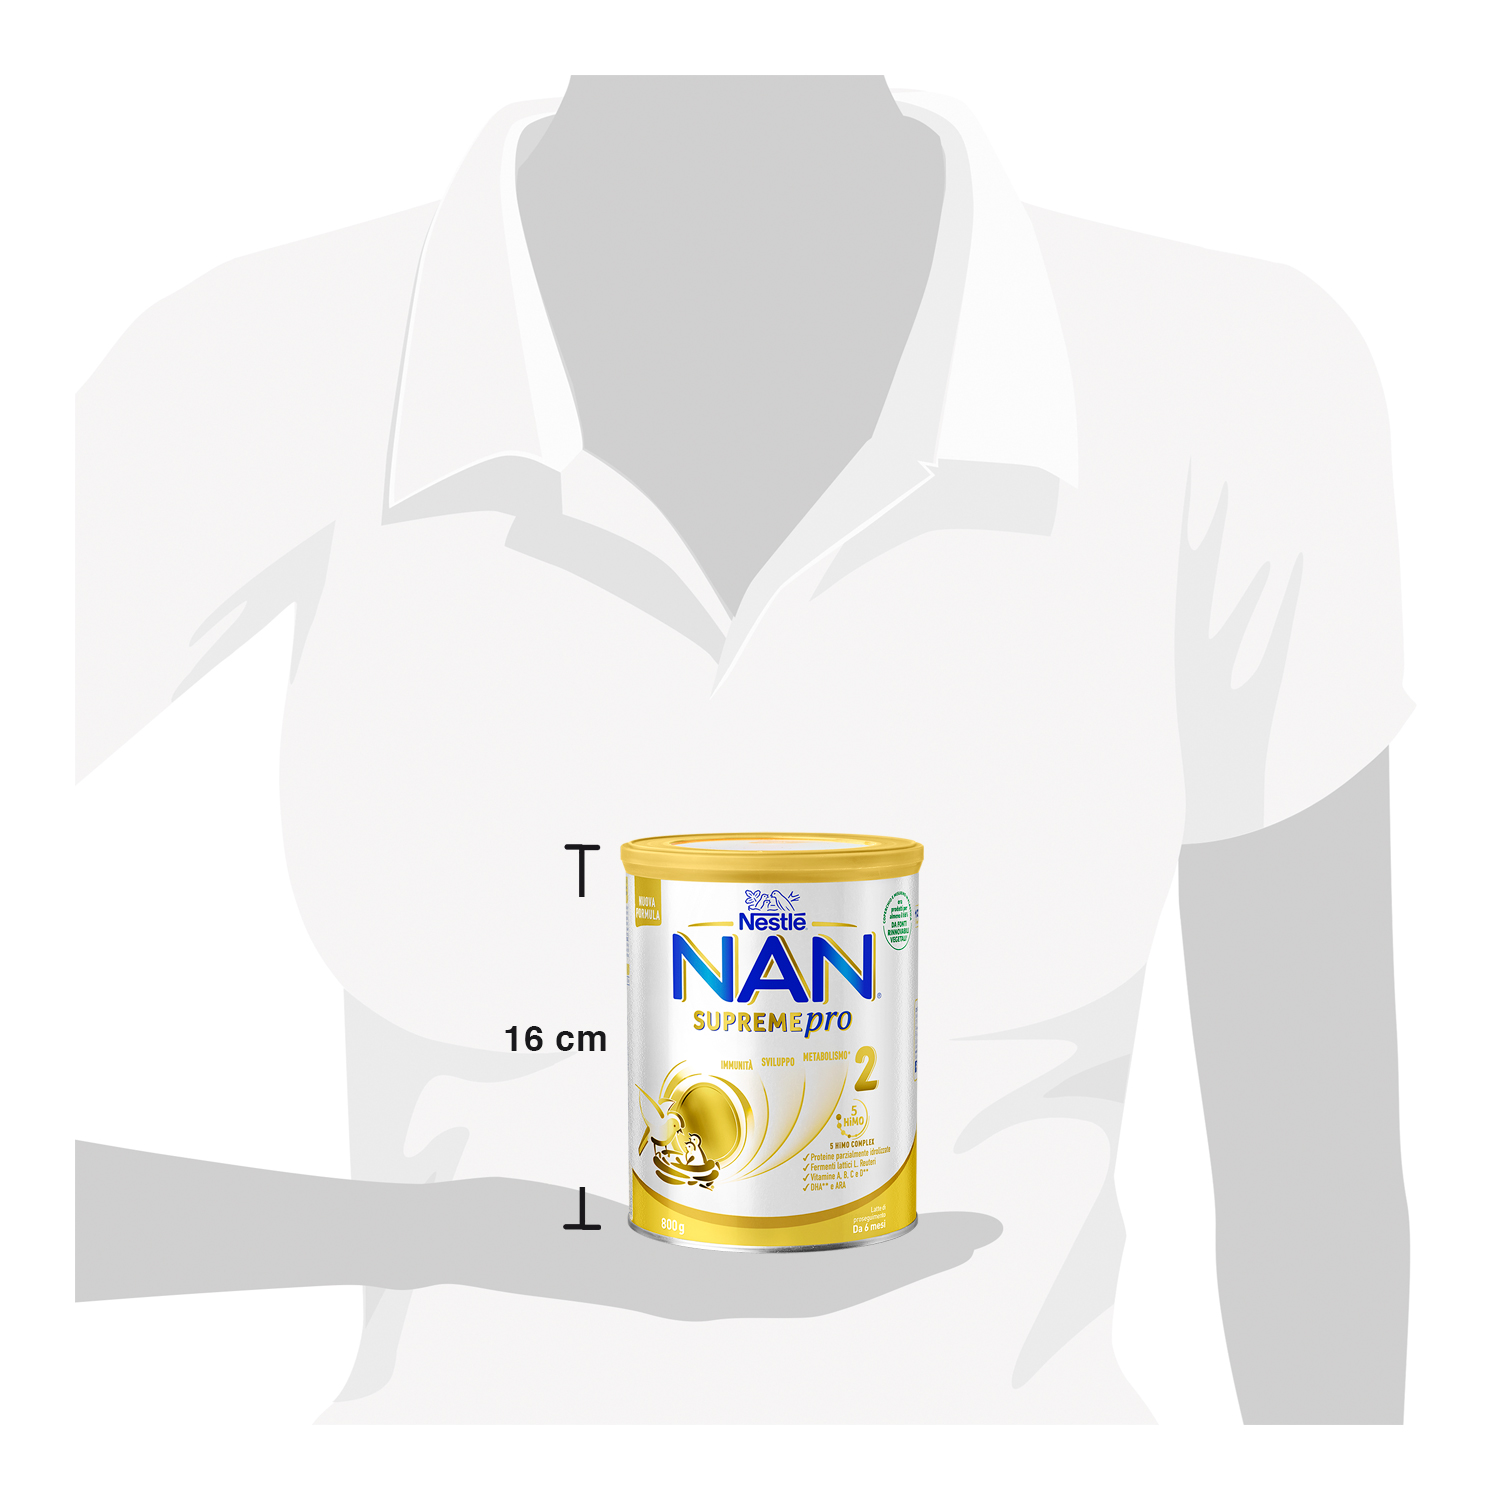 Nestlé nan supremepro 2, da 6 mesi. latte di proseguimento in polvere, latta da 800g - Nestlé